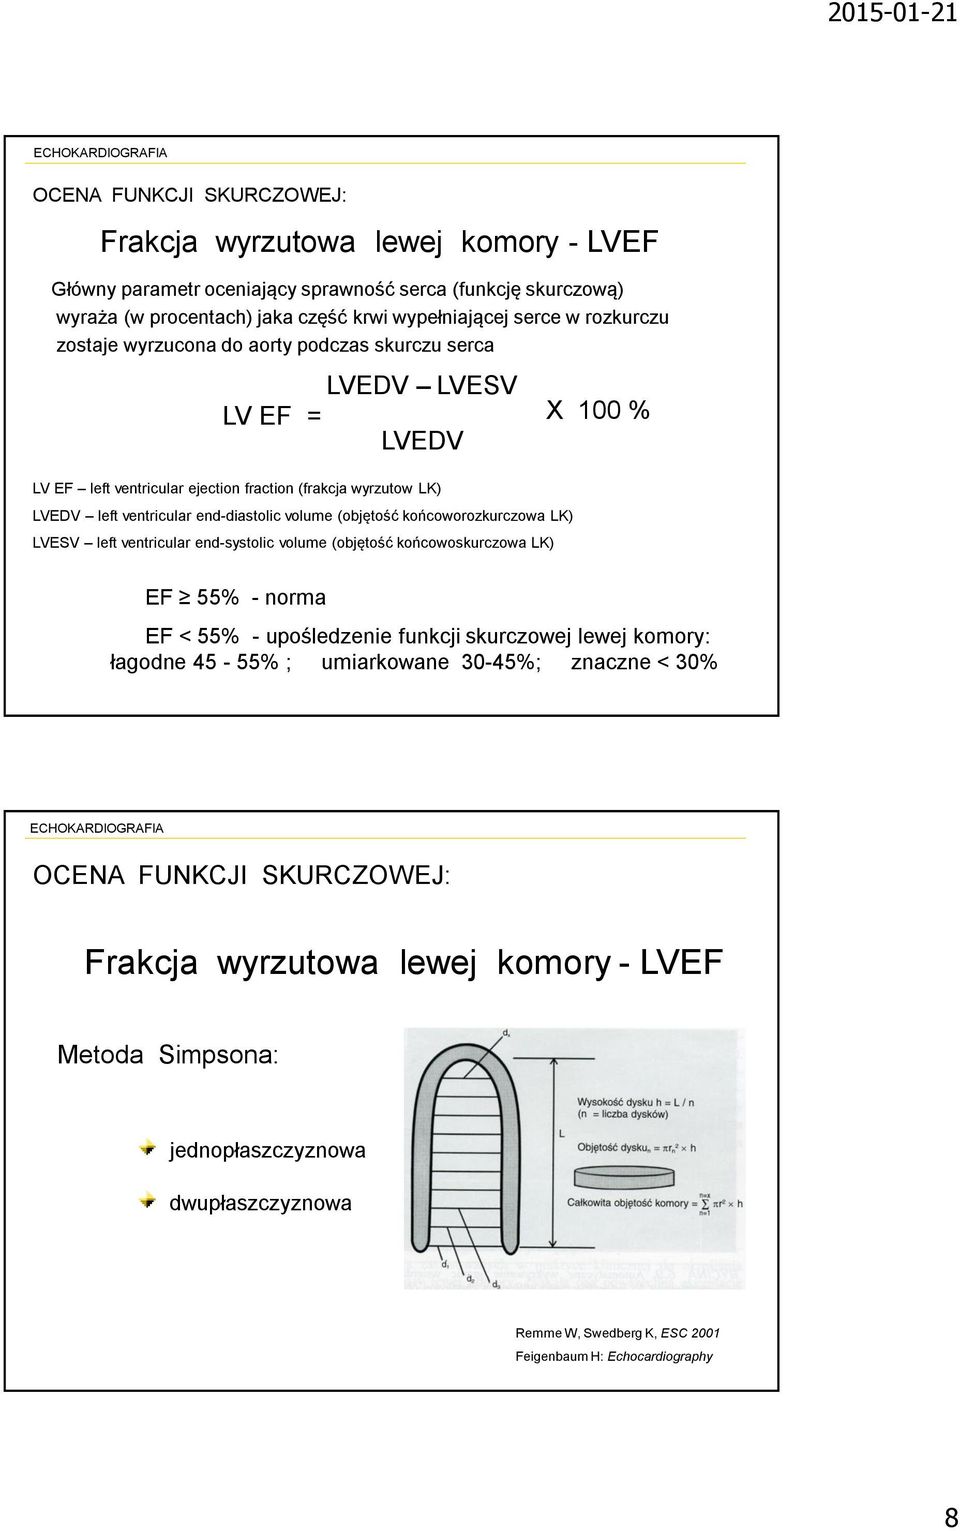 (objętość końcoworozkurczowa LK) LVESV left ventricular end-systolic volume (objętość końcowoskurczowa LK) EF 55% - norma EF < 55% - upośledzenie funkcji skurczowej lewej komory: łagodne 45-55% ;